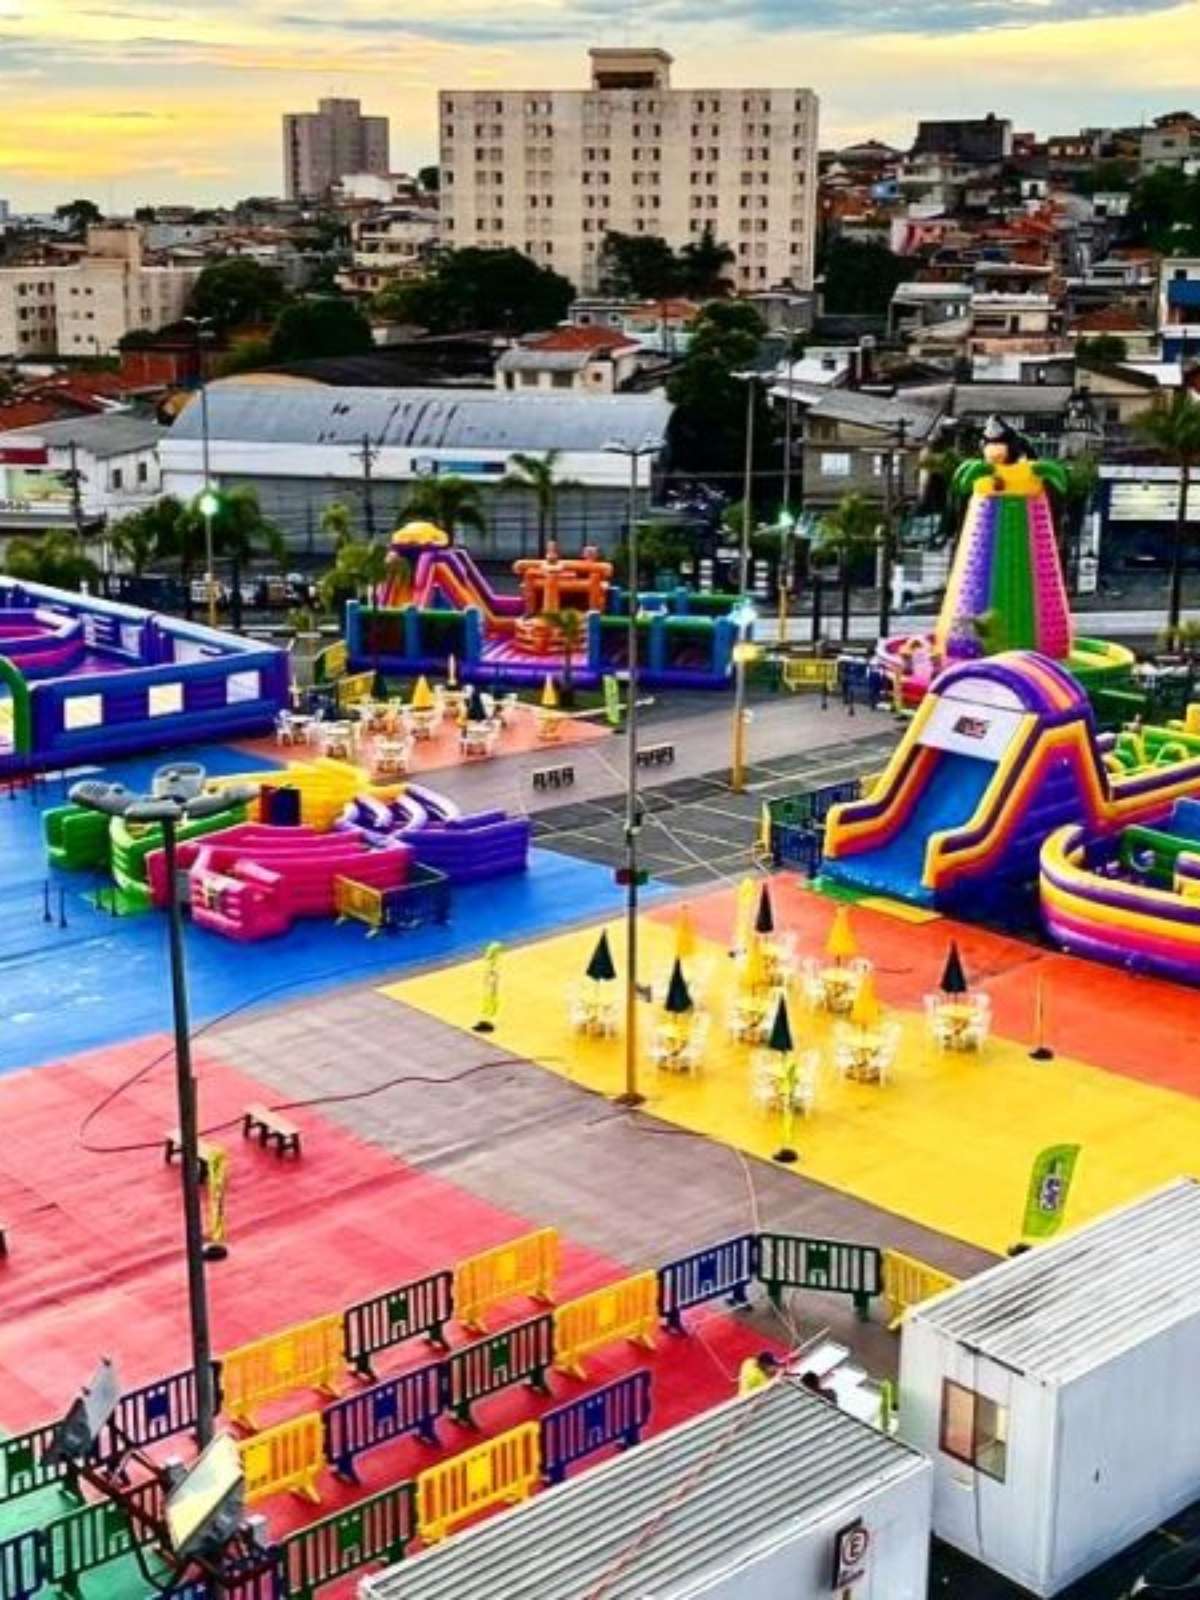 Parque de diversões com brinquedos radicais agita a Festa do Peão de  Barretos - ACidade ON Ribeirão Preto